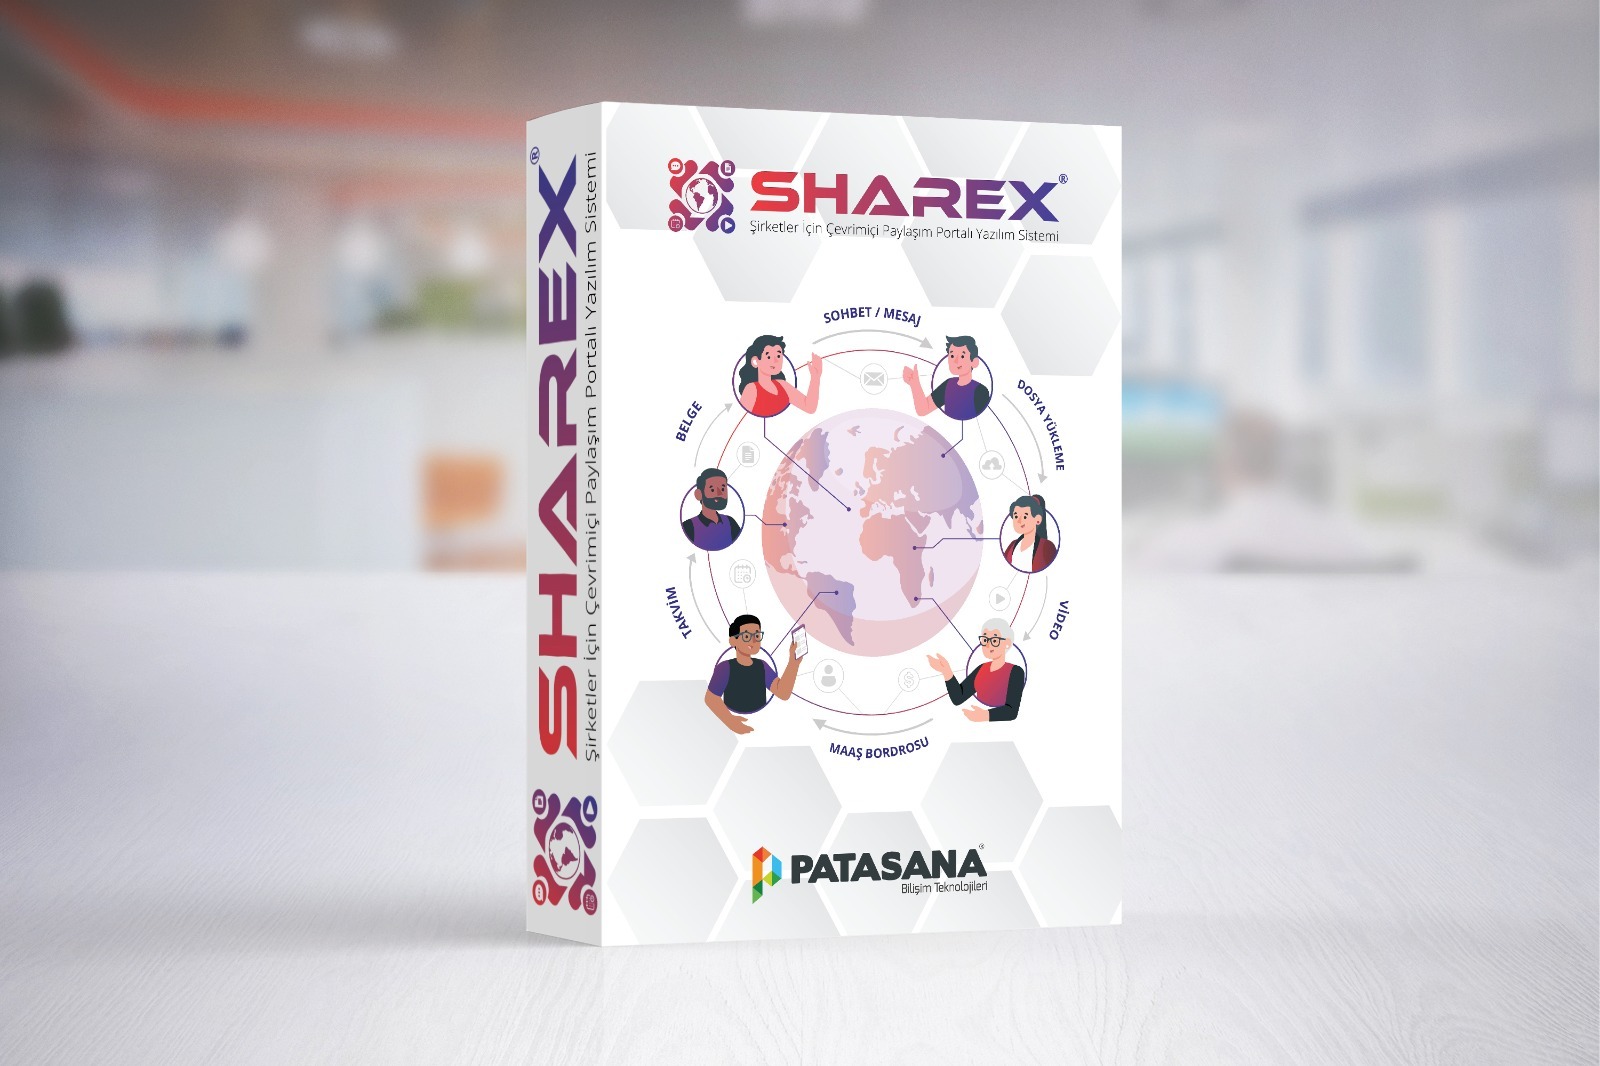 Sharex - Şirketler İçin Çevrimiçi Paylaşım Portal Yazılım Sistemi - Patasana Bilişim Teknolojileri